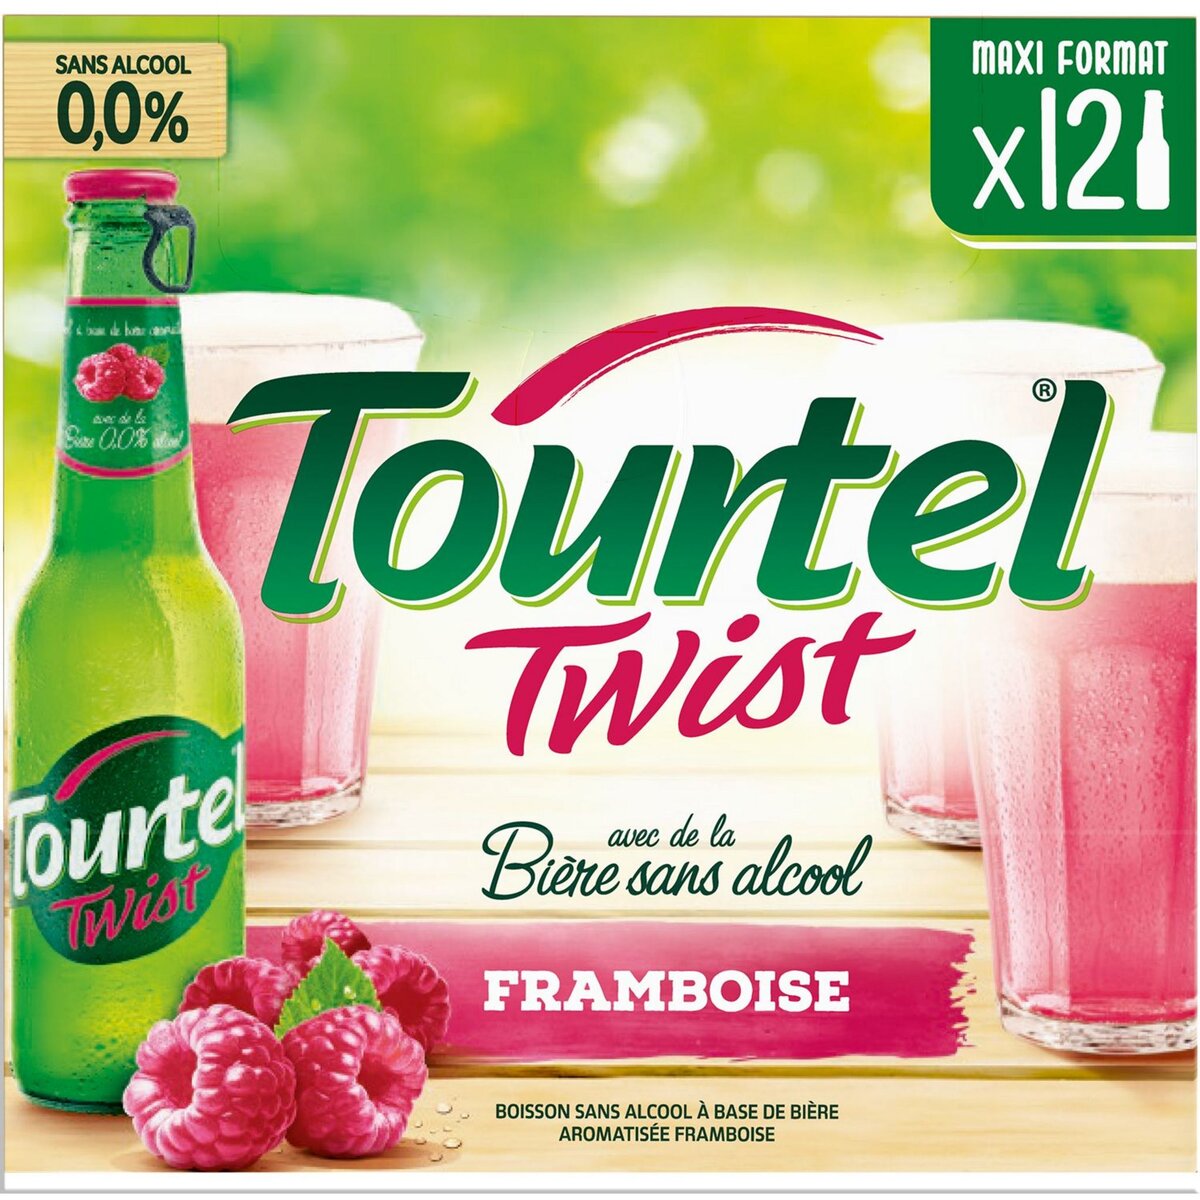 TOURTEL Tourtel twist Bière sans alcool framboise bouteilles 12x27,5cl 12x27,5cl